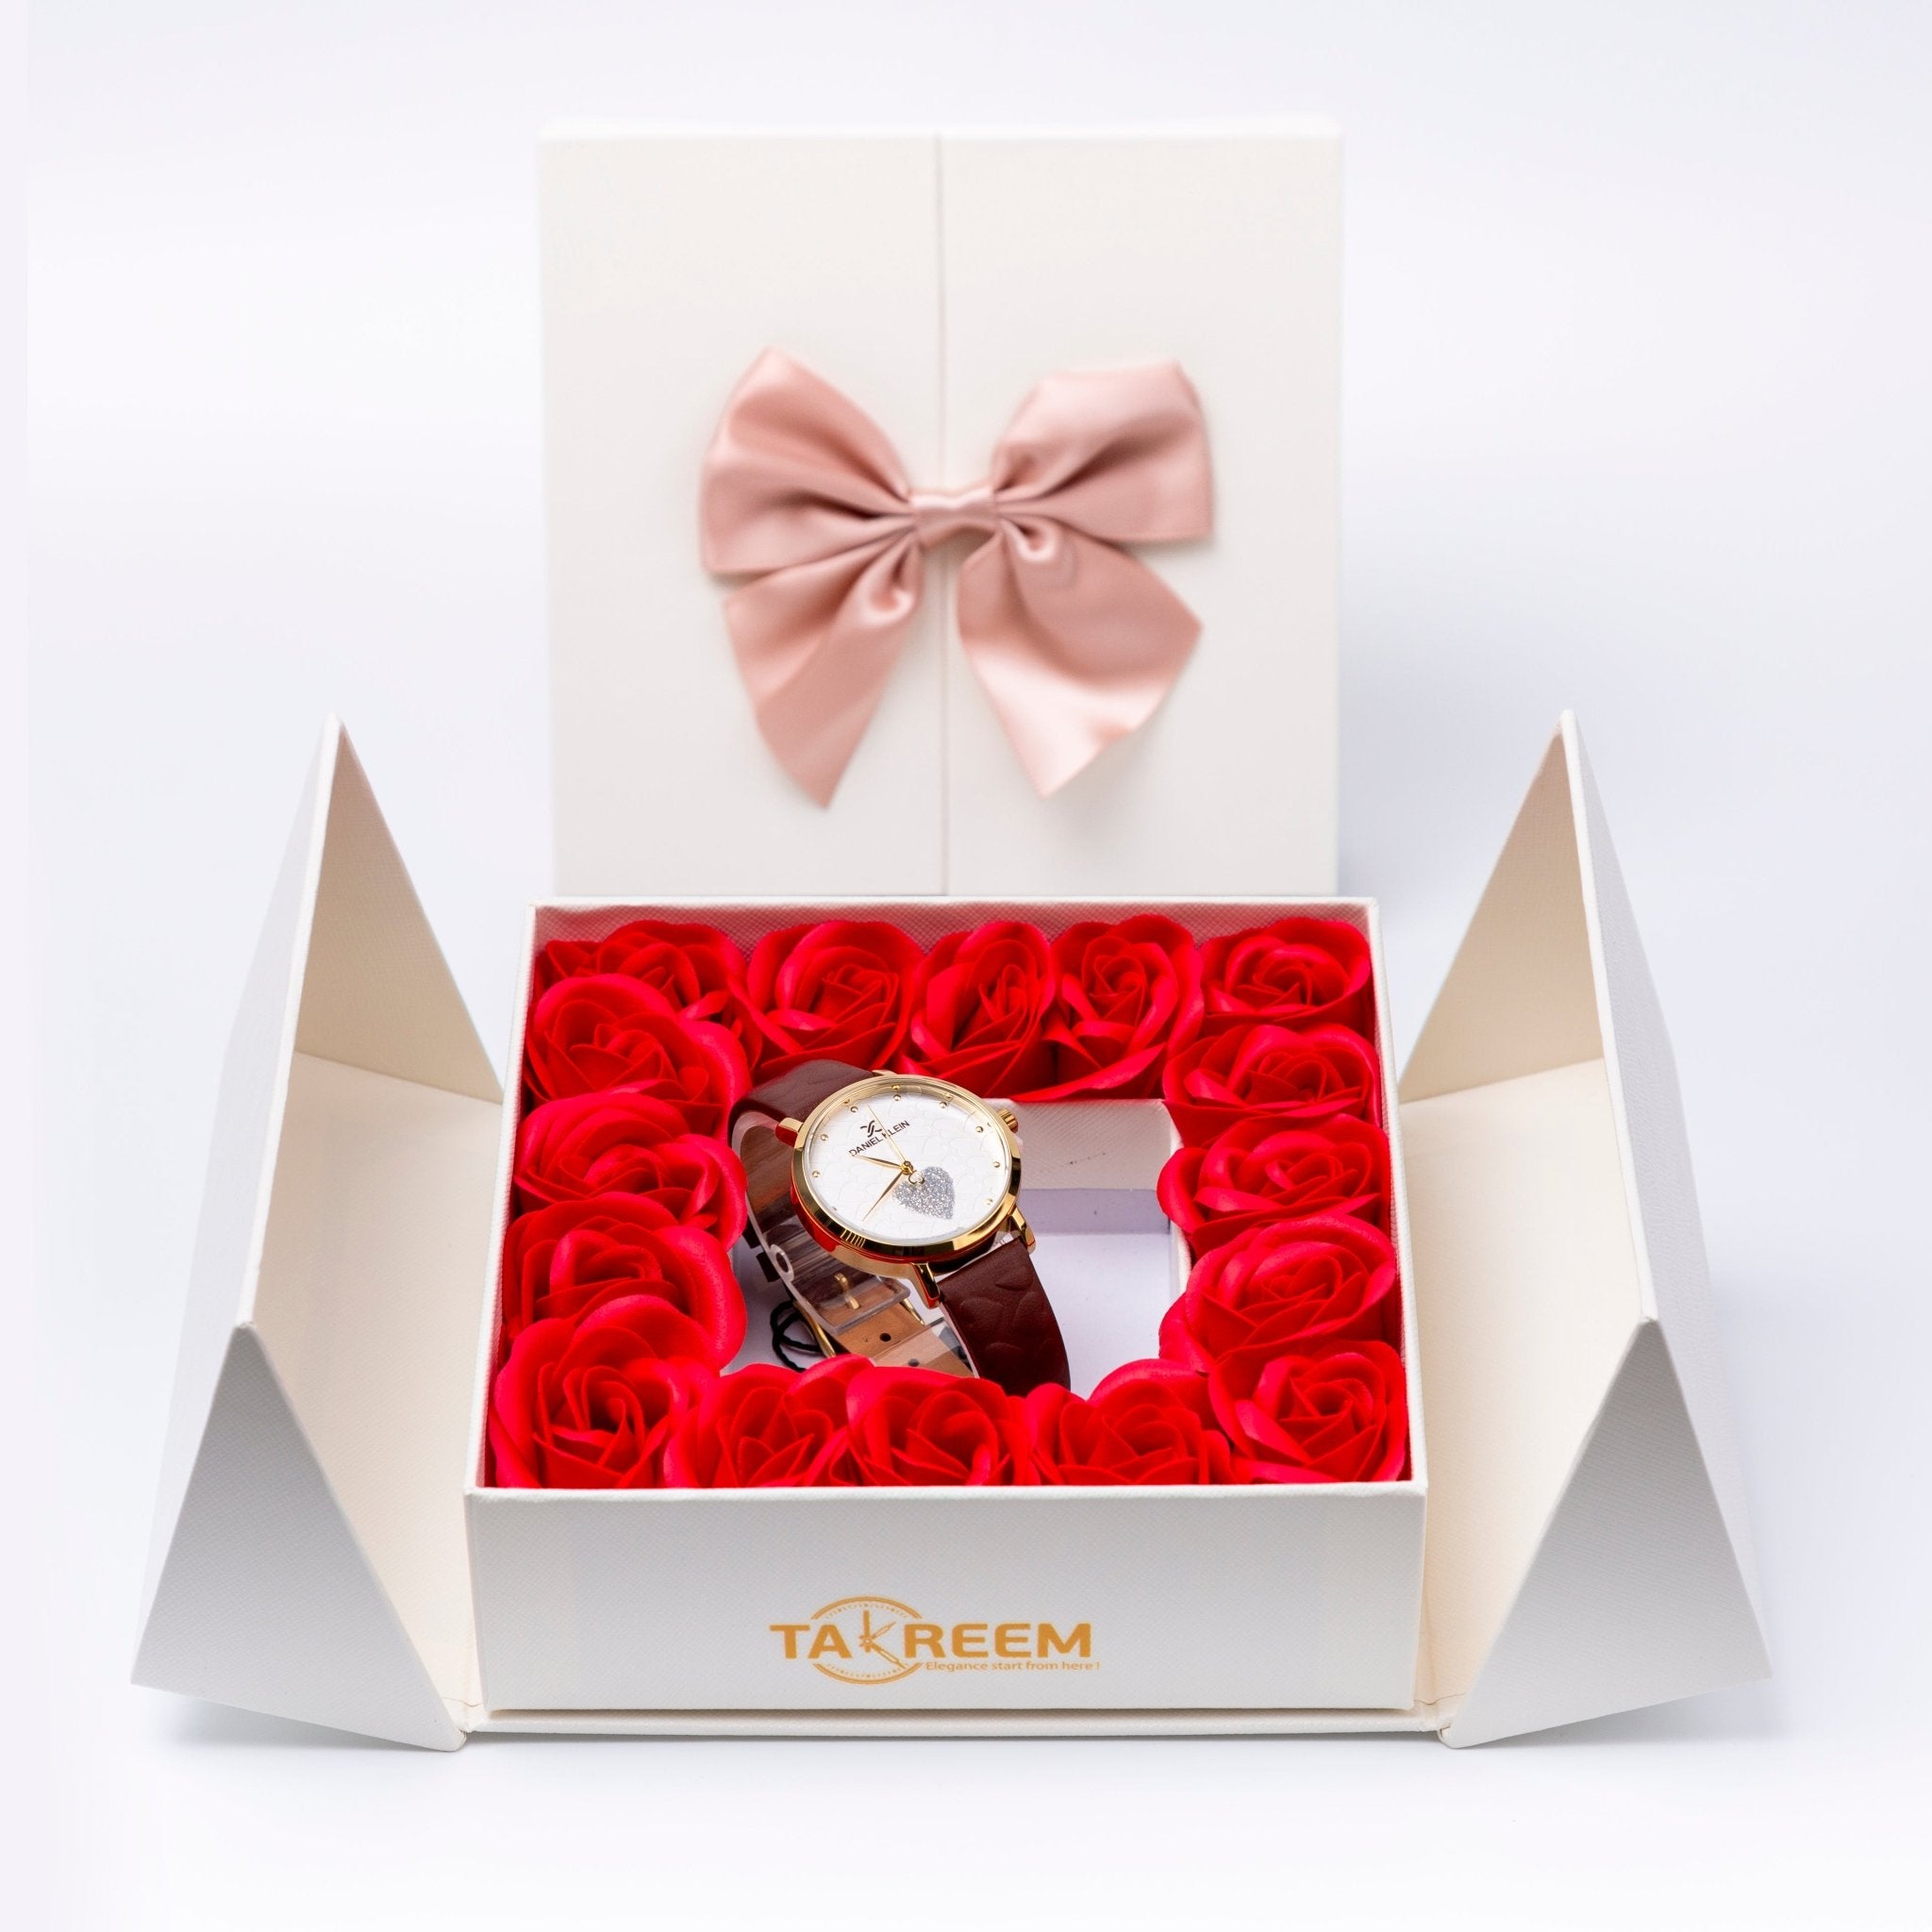 Flower Box - Gift For Women 11 - #shoFlower Box - Gift For Women 11p_name#Flower Box - Gift For Women 11Gift Boxes & TinsTakreemTakreem.joWomenWatchFlower Box - Gift For Women 11 - Takreem.jo